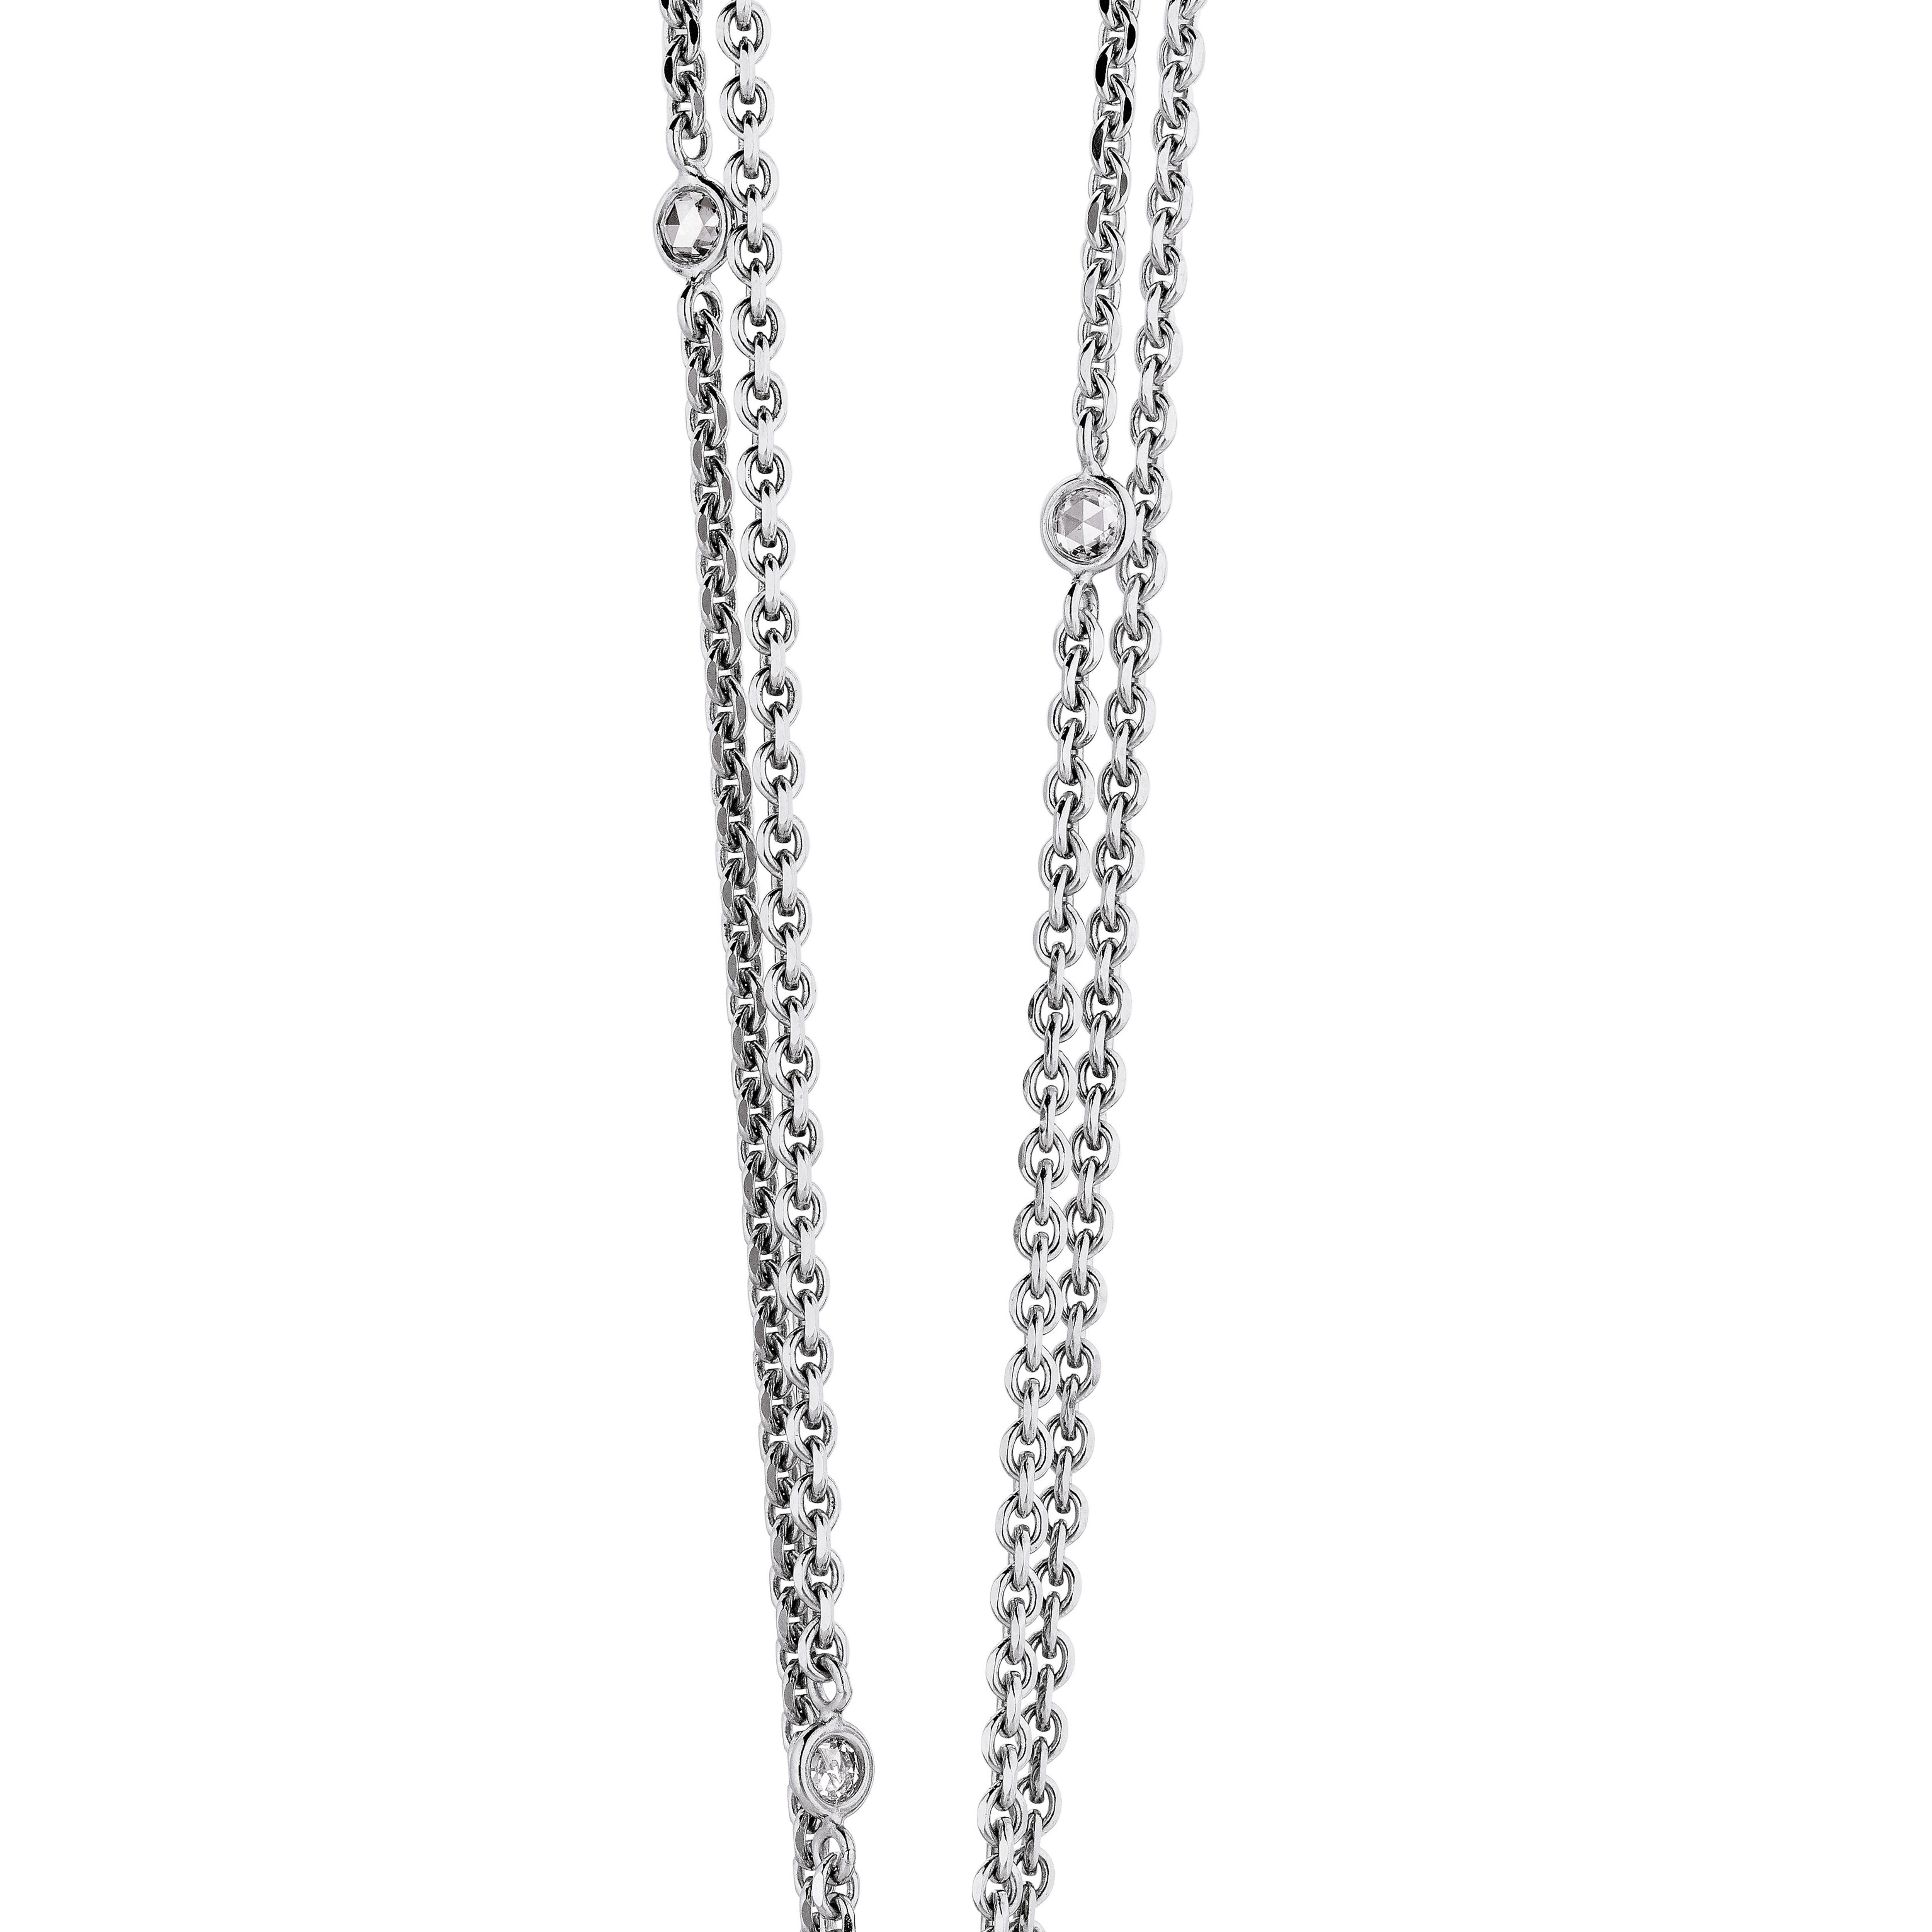 Round Pendant Necklace - 18k White Gold - 247 Pavé Diamonds 14.06 ct GVS - 48mm For Sale 4